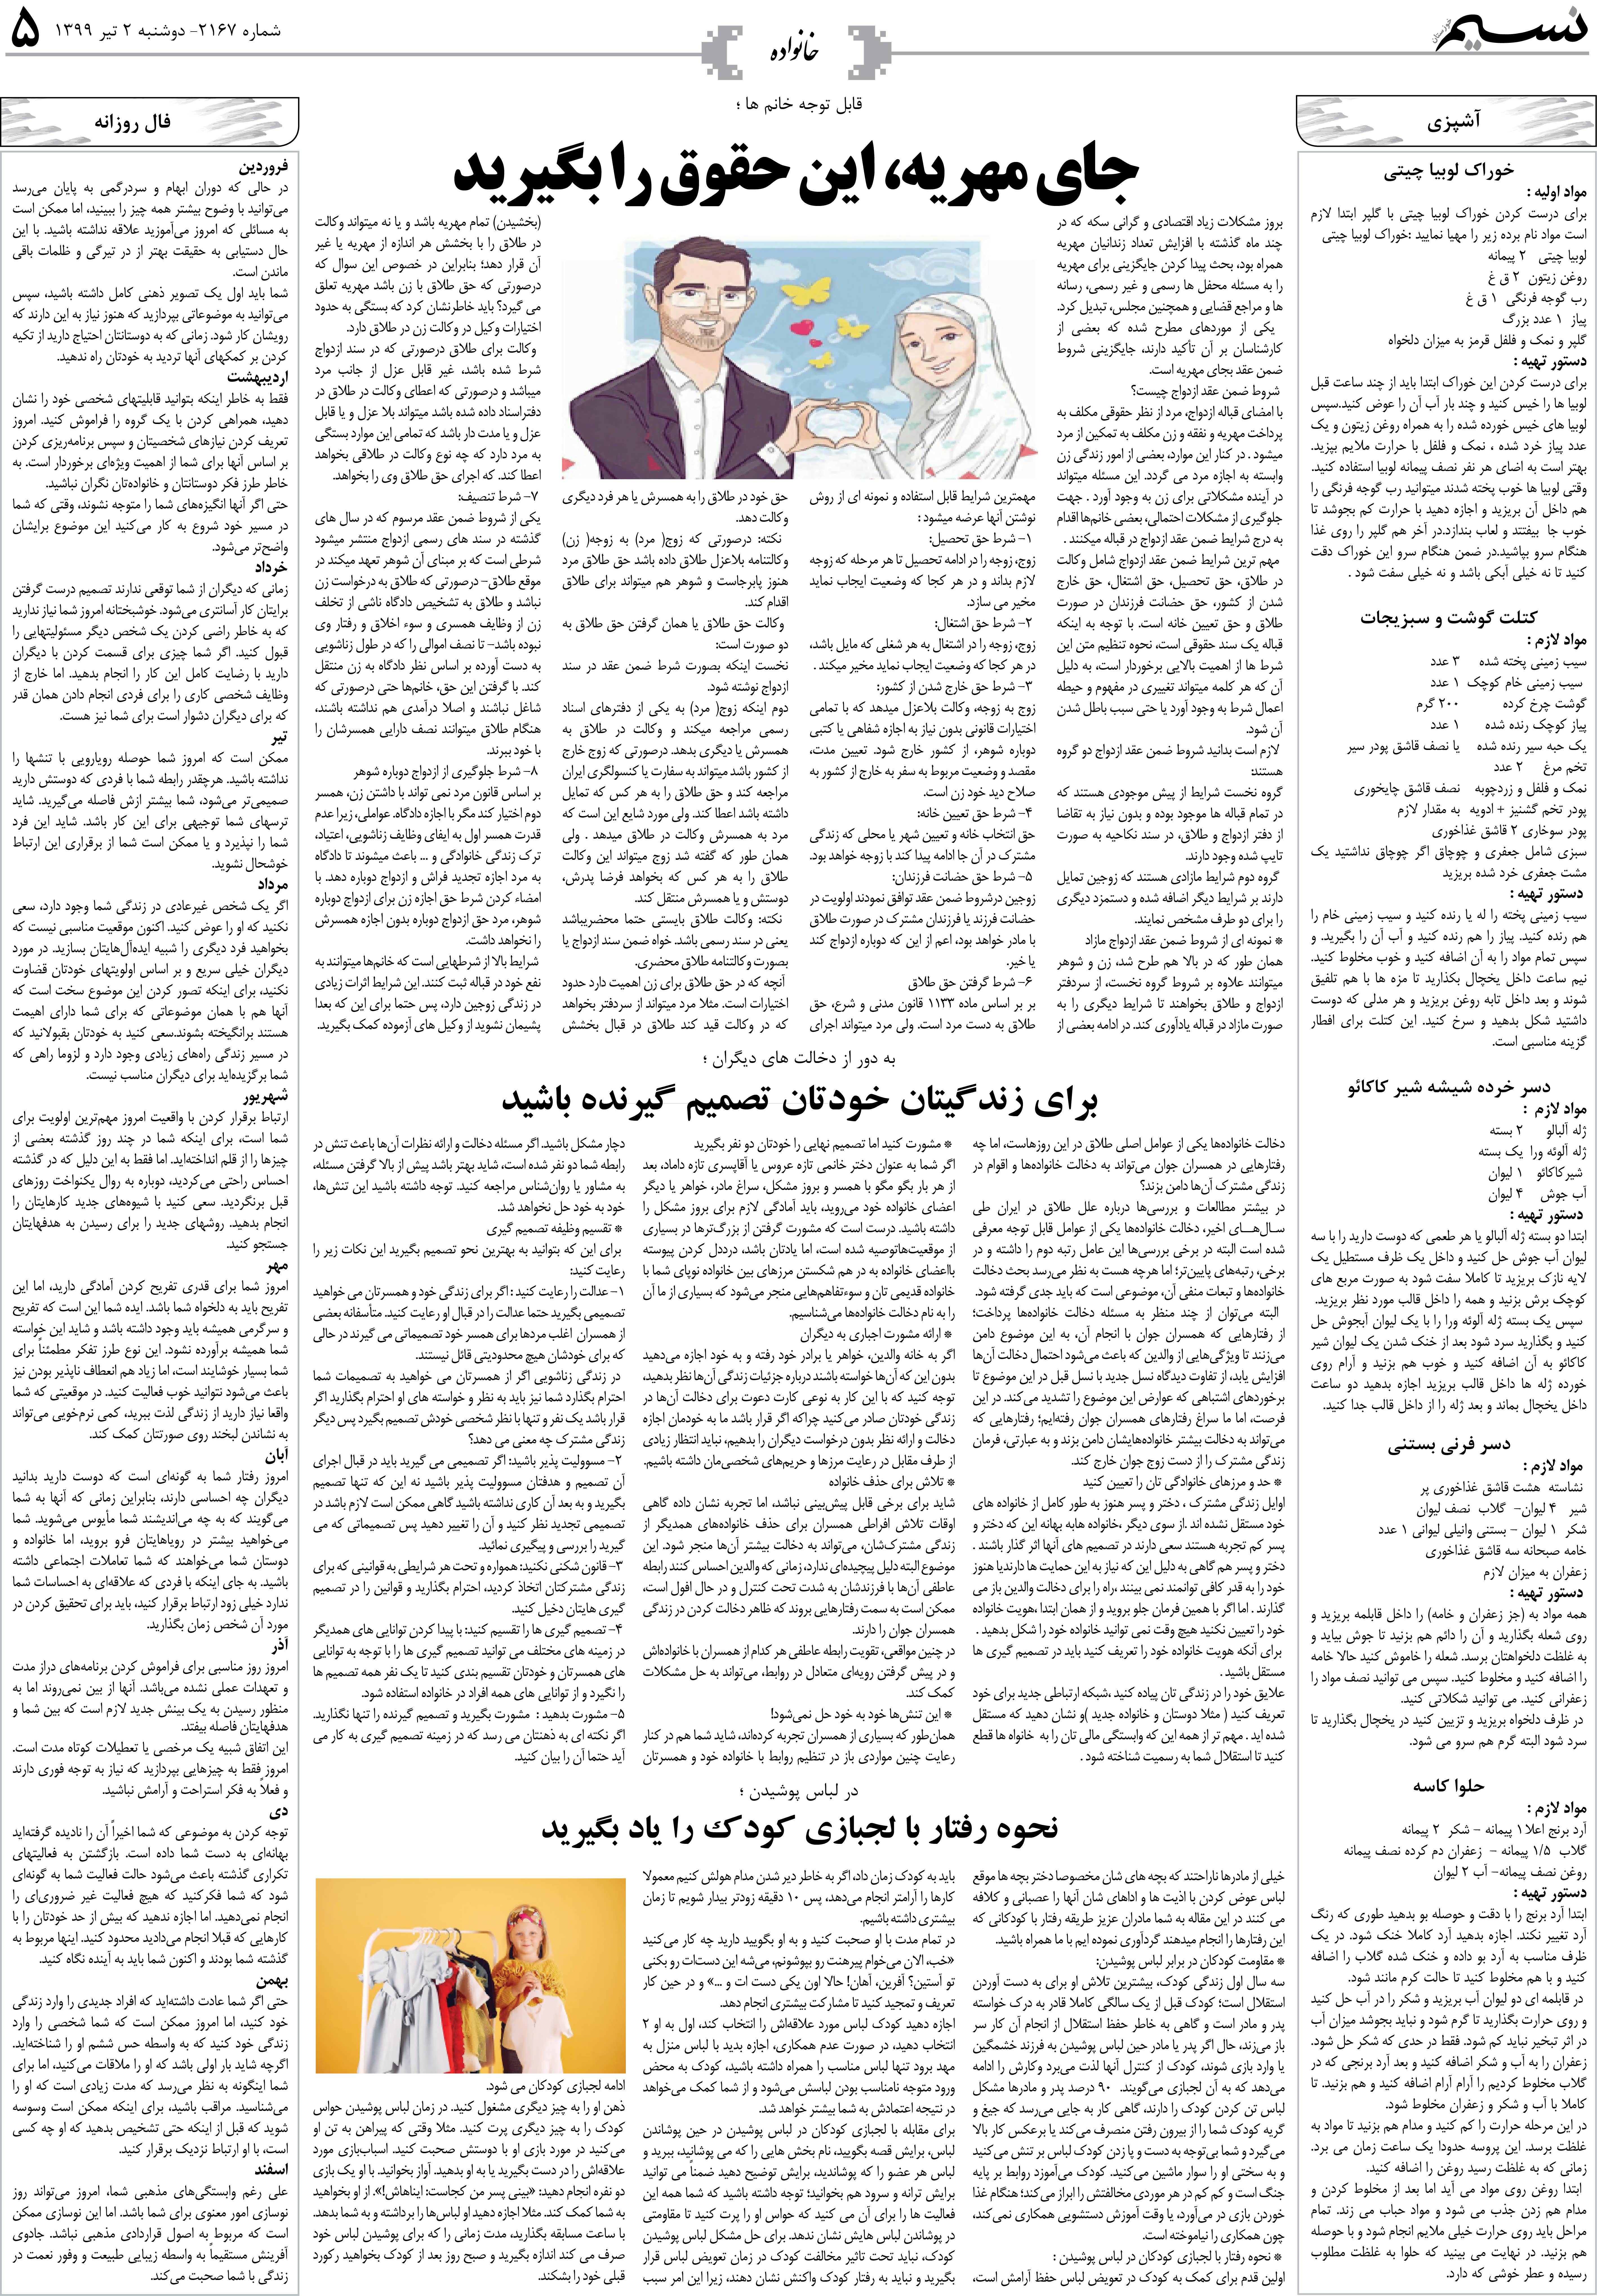 صفحه خانواده روزنامه نسیم شماره 2167